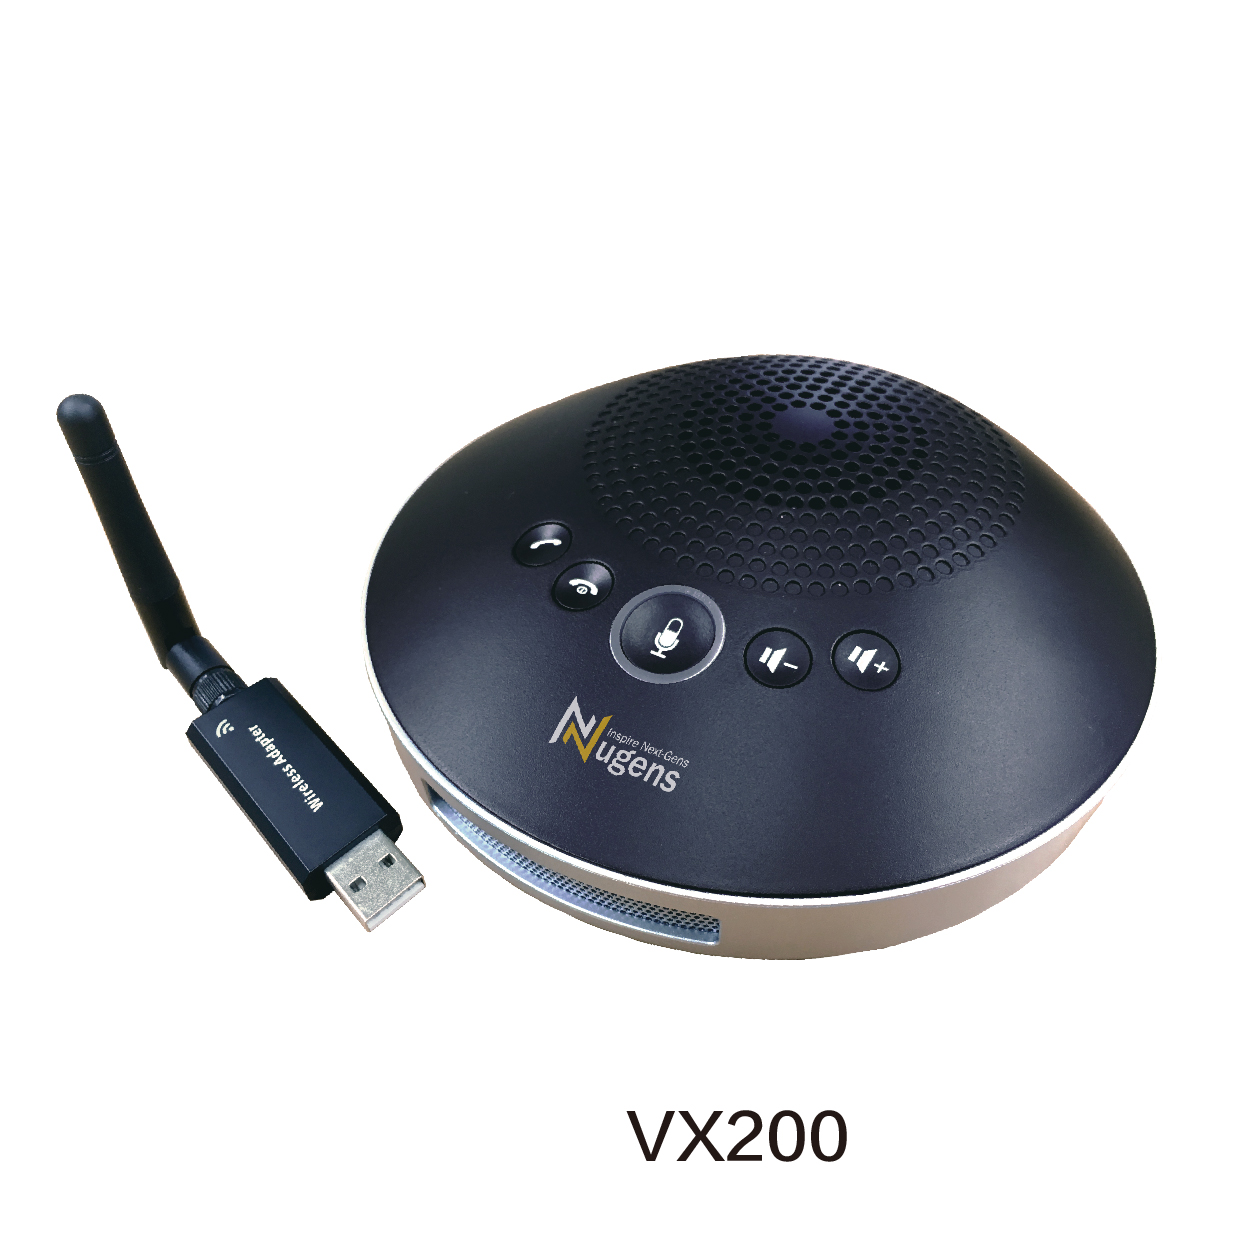 VX200